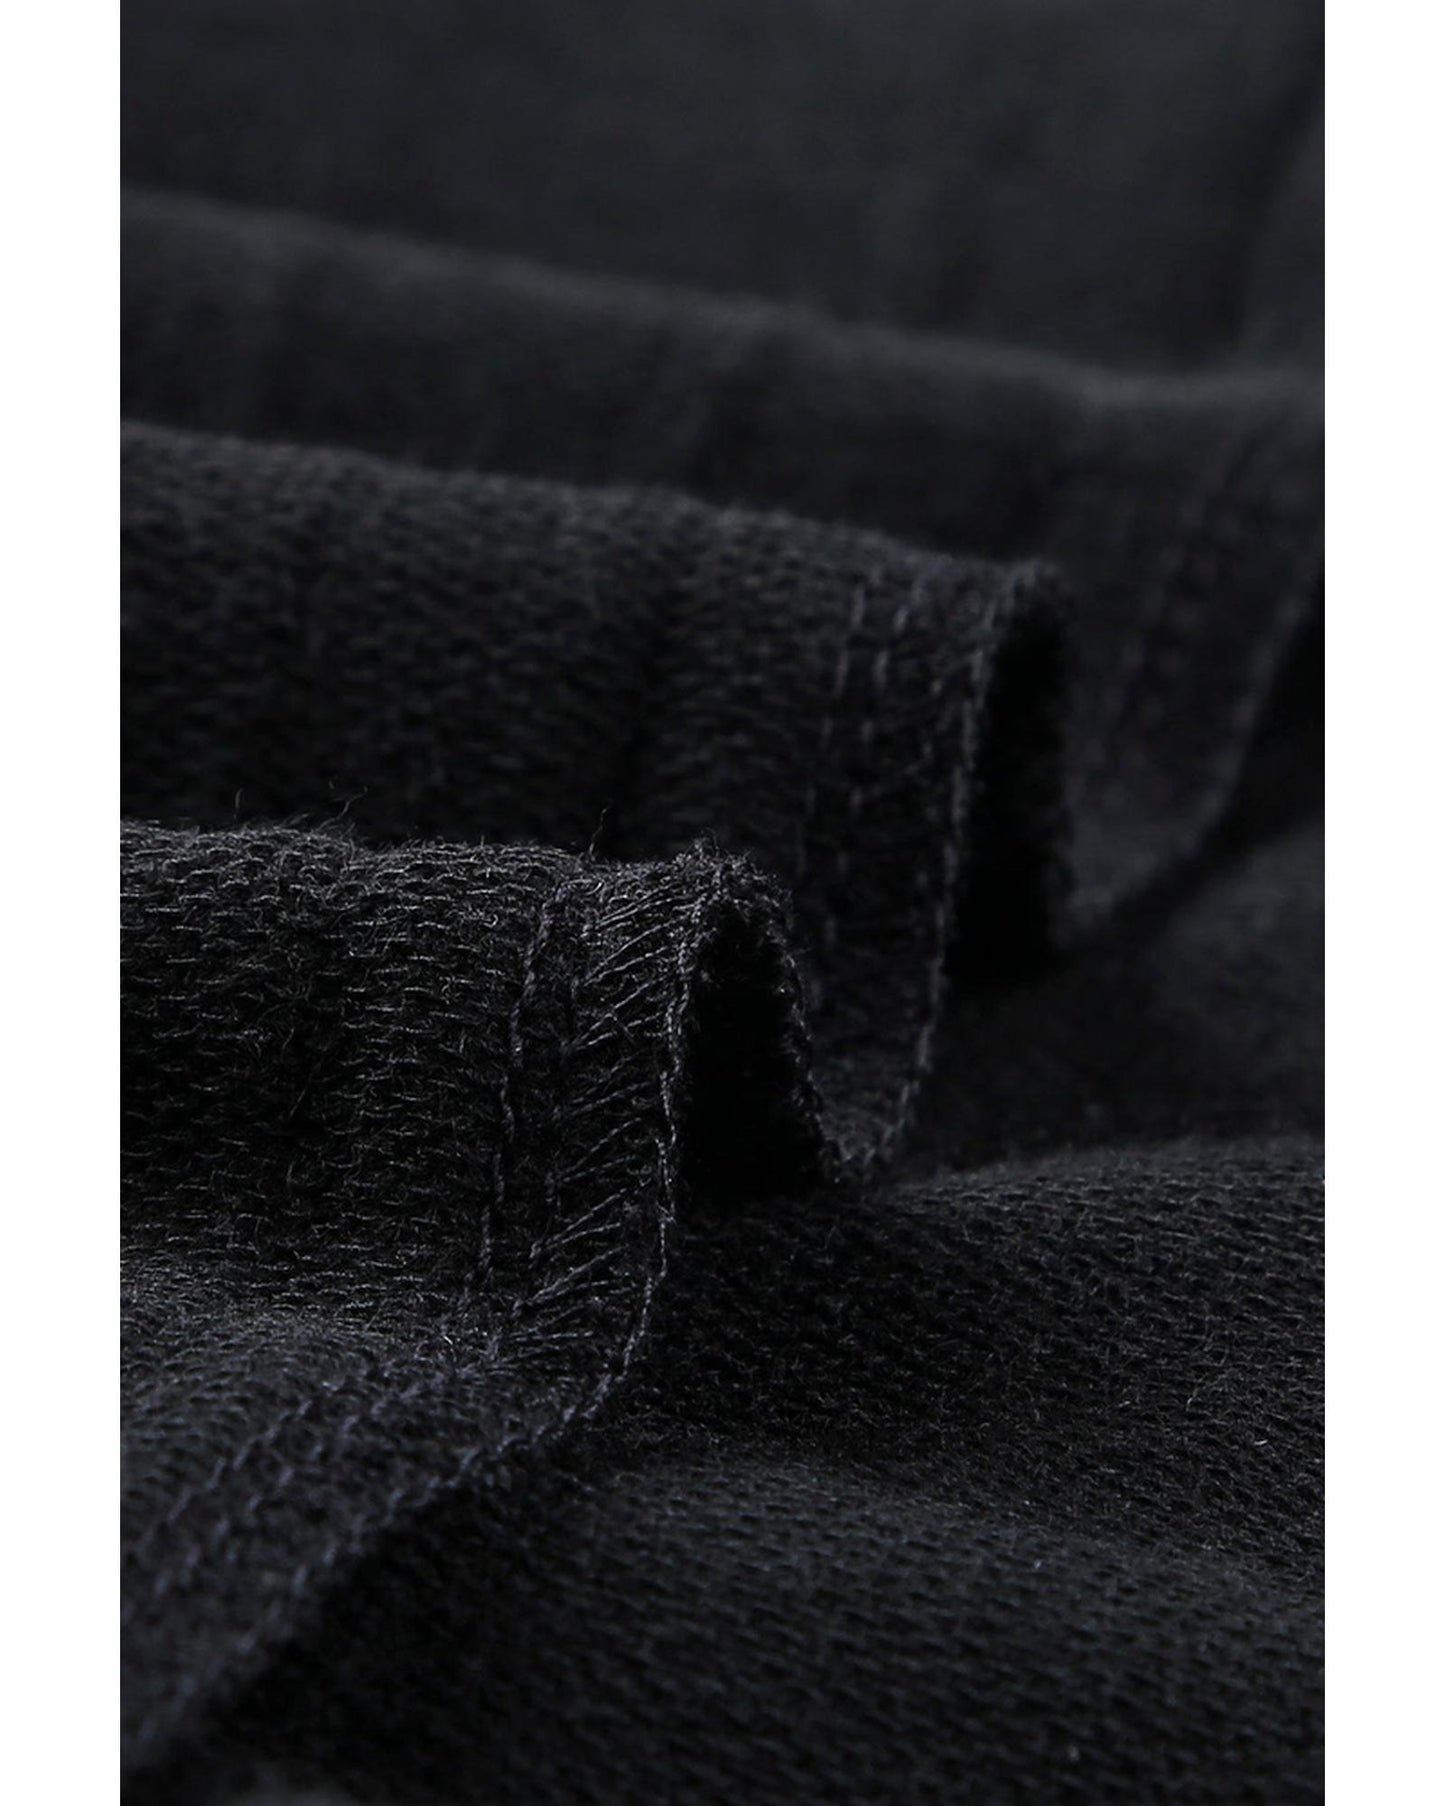 Azura Exchange Black Sweatshirt - M